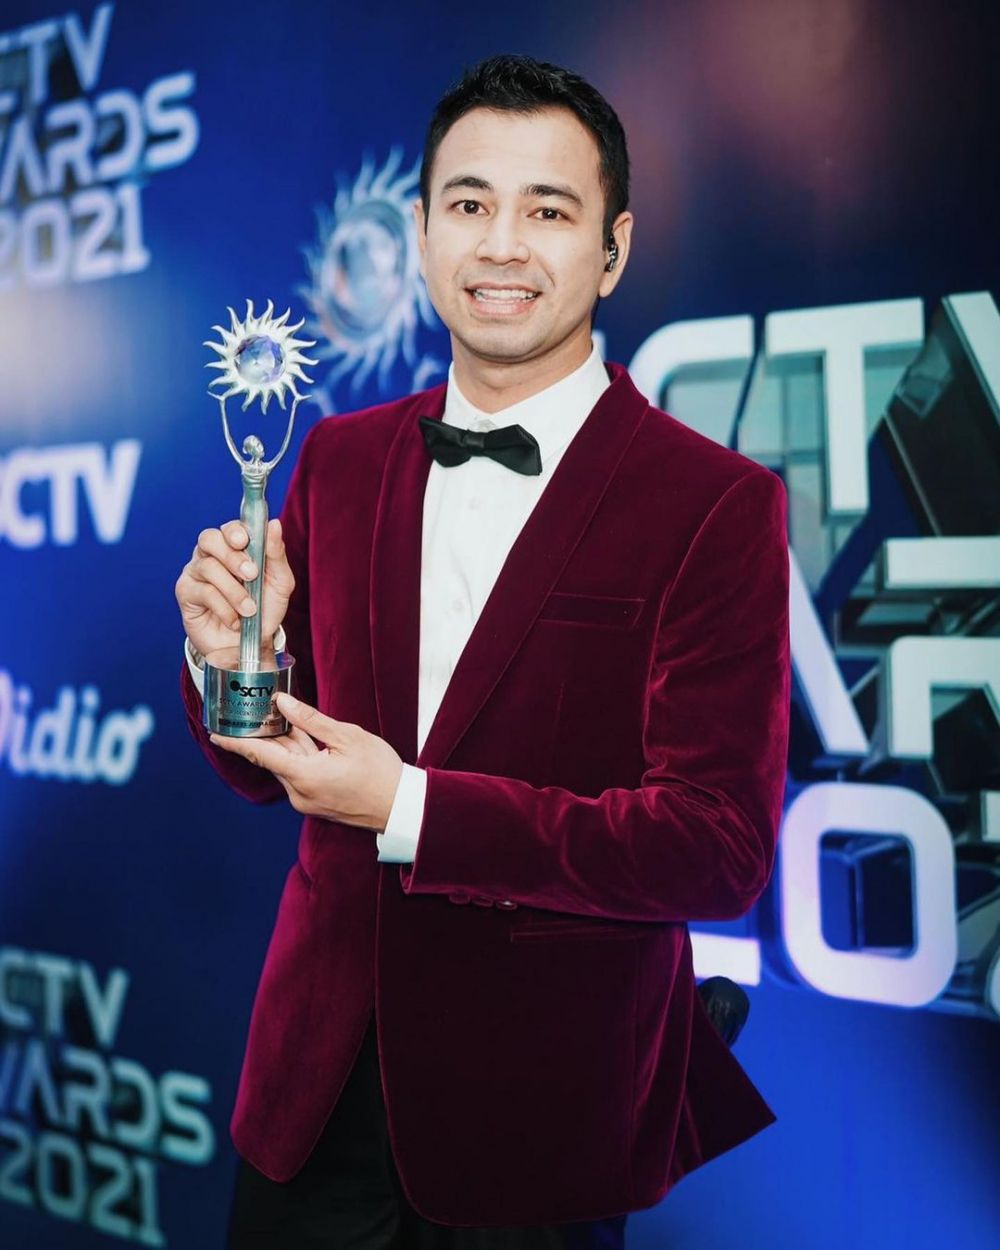 Gaya 7 seleb pemenang SCTV Awards 2021, glamor dan menawan